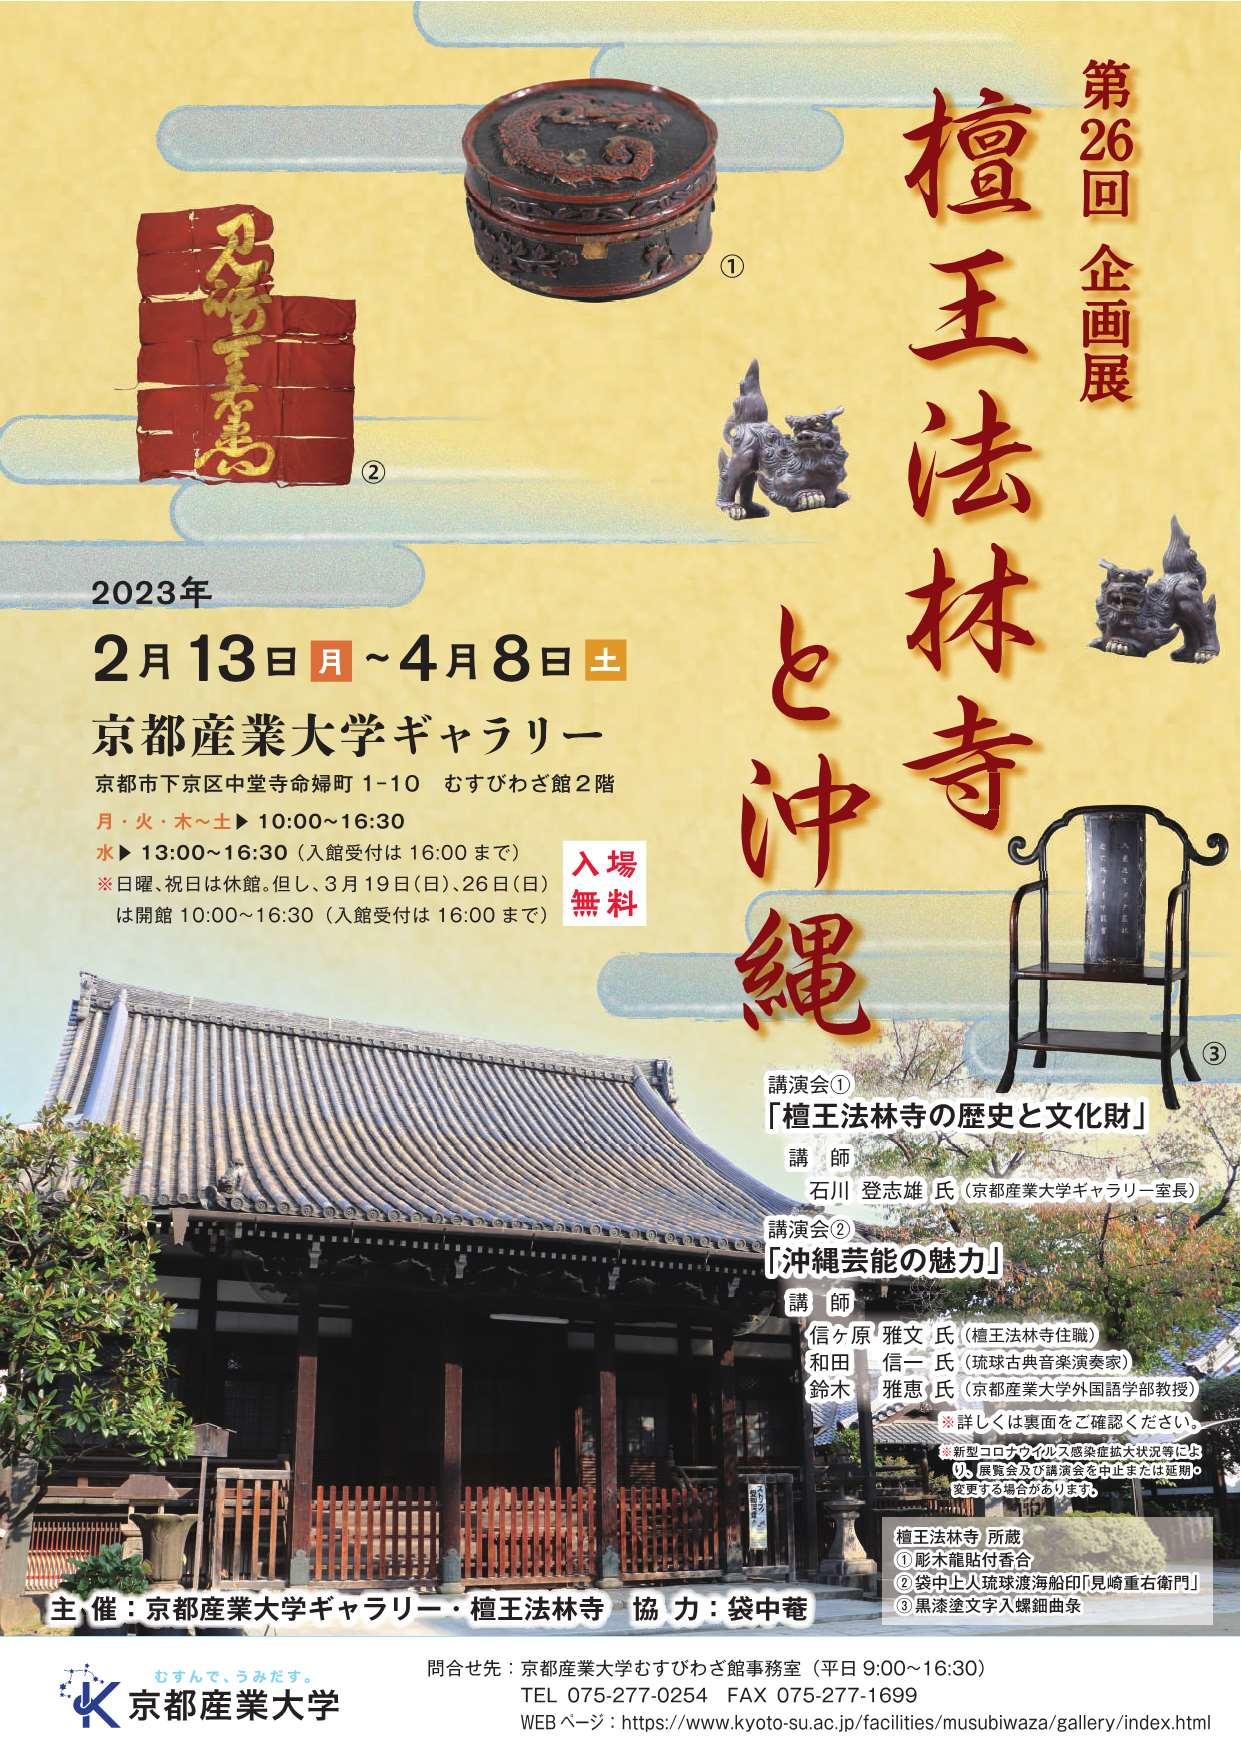 【京都産業大学】檀王法林寺を通して琉球文化の魅力を知る企画展「檀王法林寺と沖縄」を開催